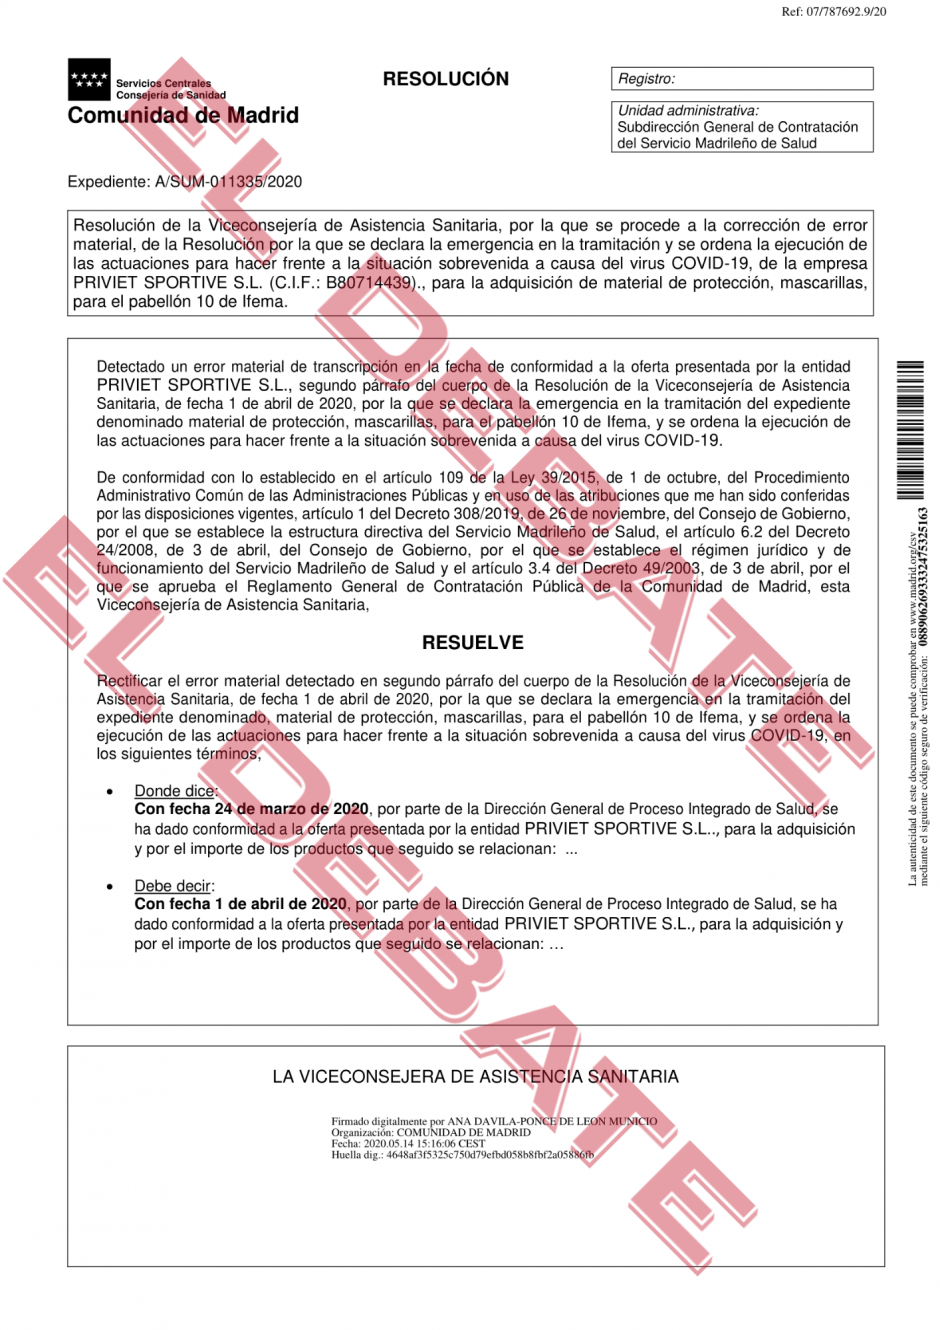 Corrección de oficio a la resolución administrativa adjudicataria de la compra de material sanitario de la Comunidad de Madrid, a favor de Priviet Sportive, SL